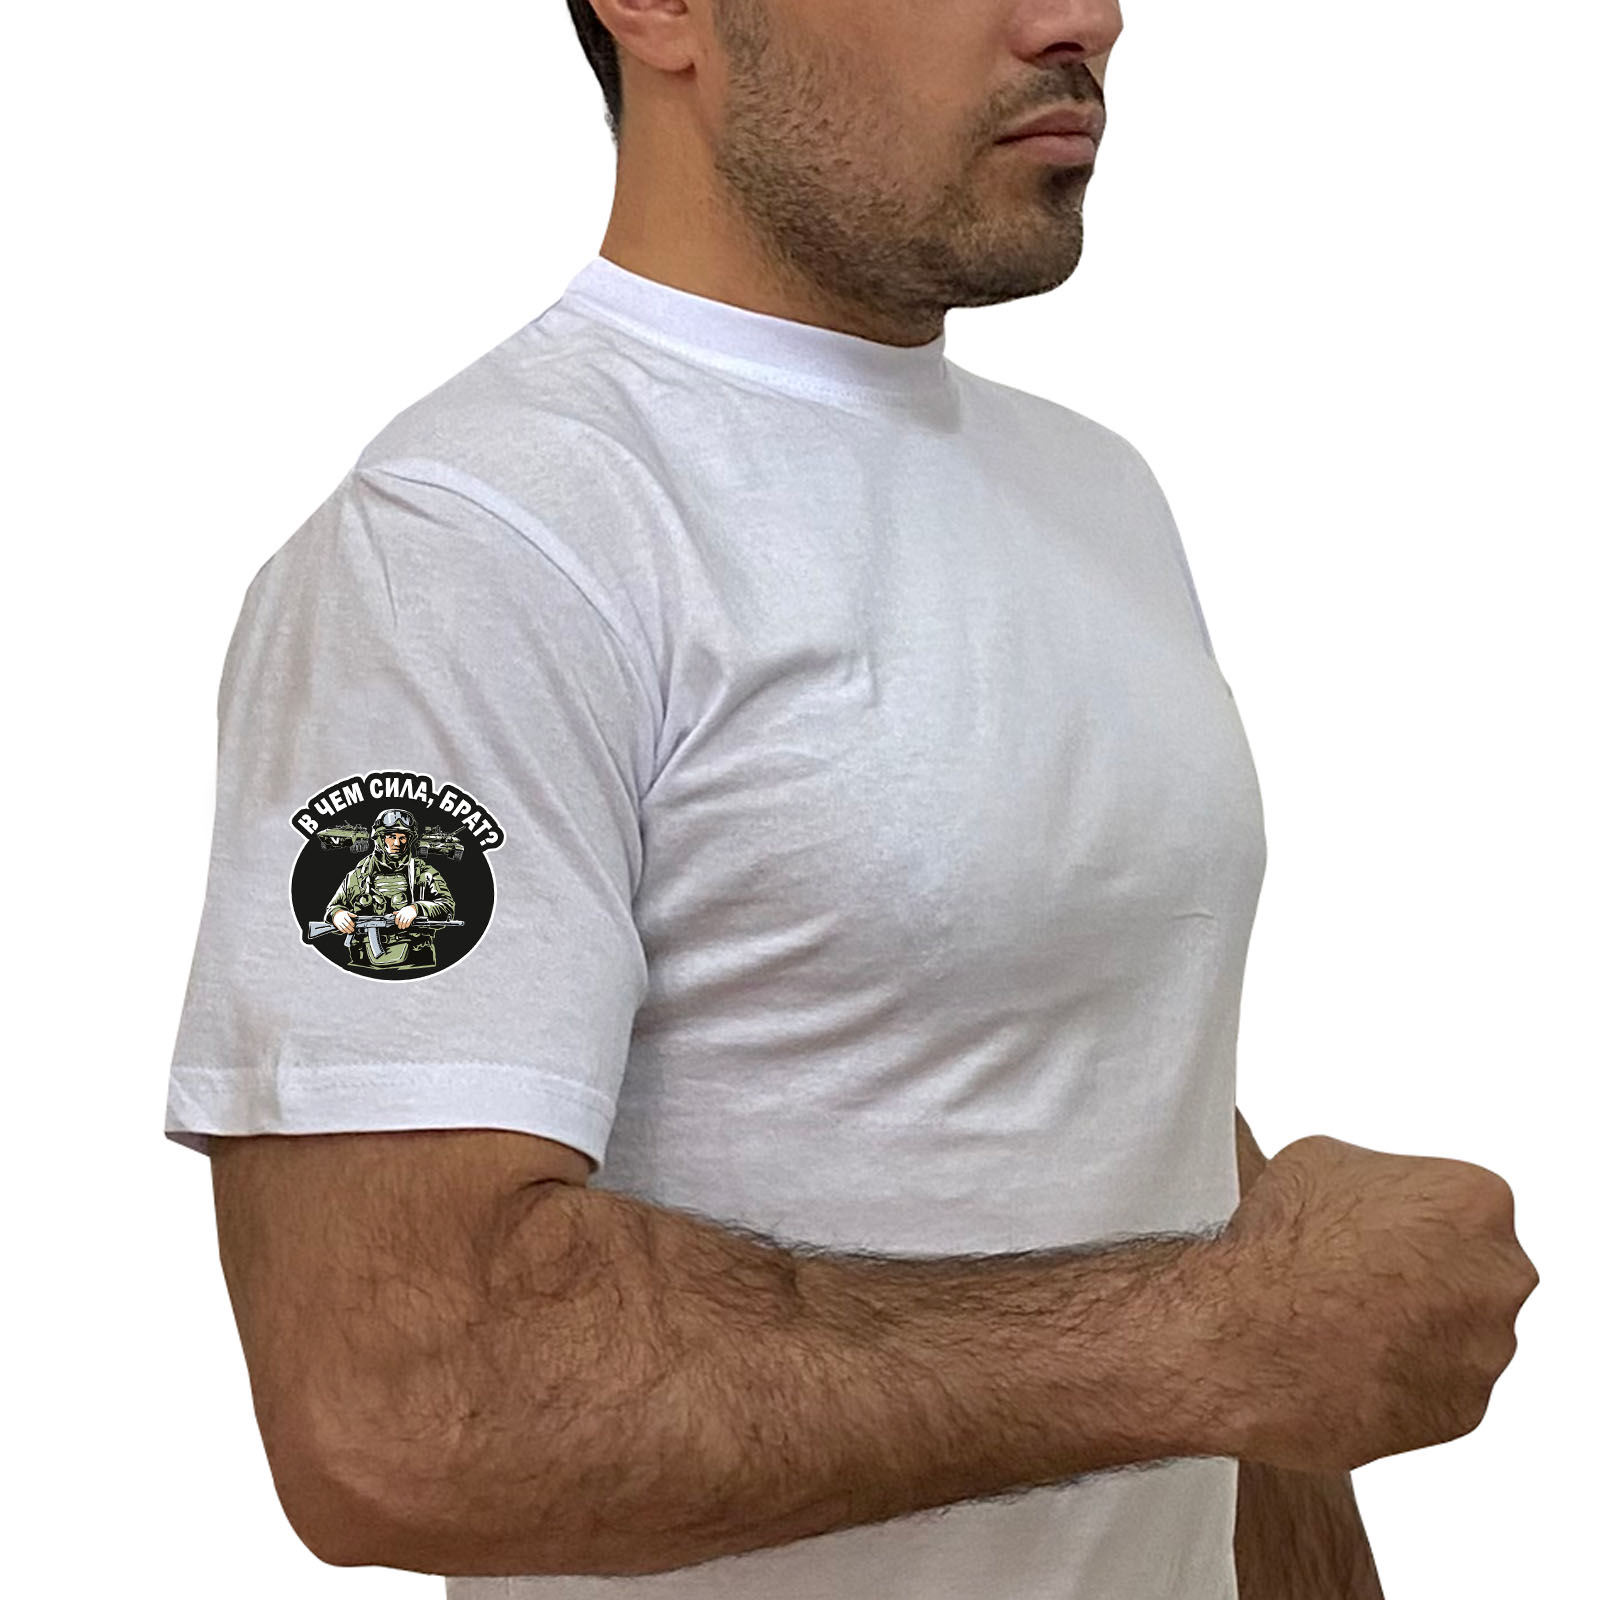 Купить белую футболку "В чём сила, брат?" с термотрансфером на рукаве